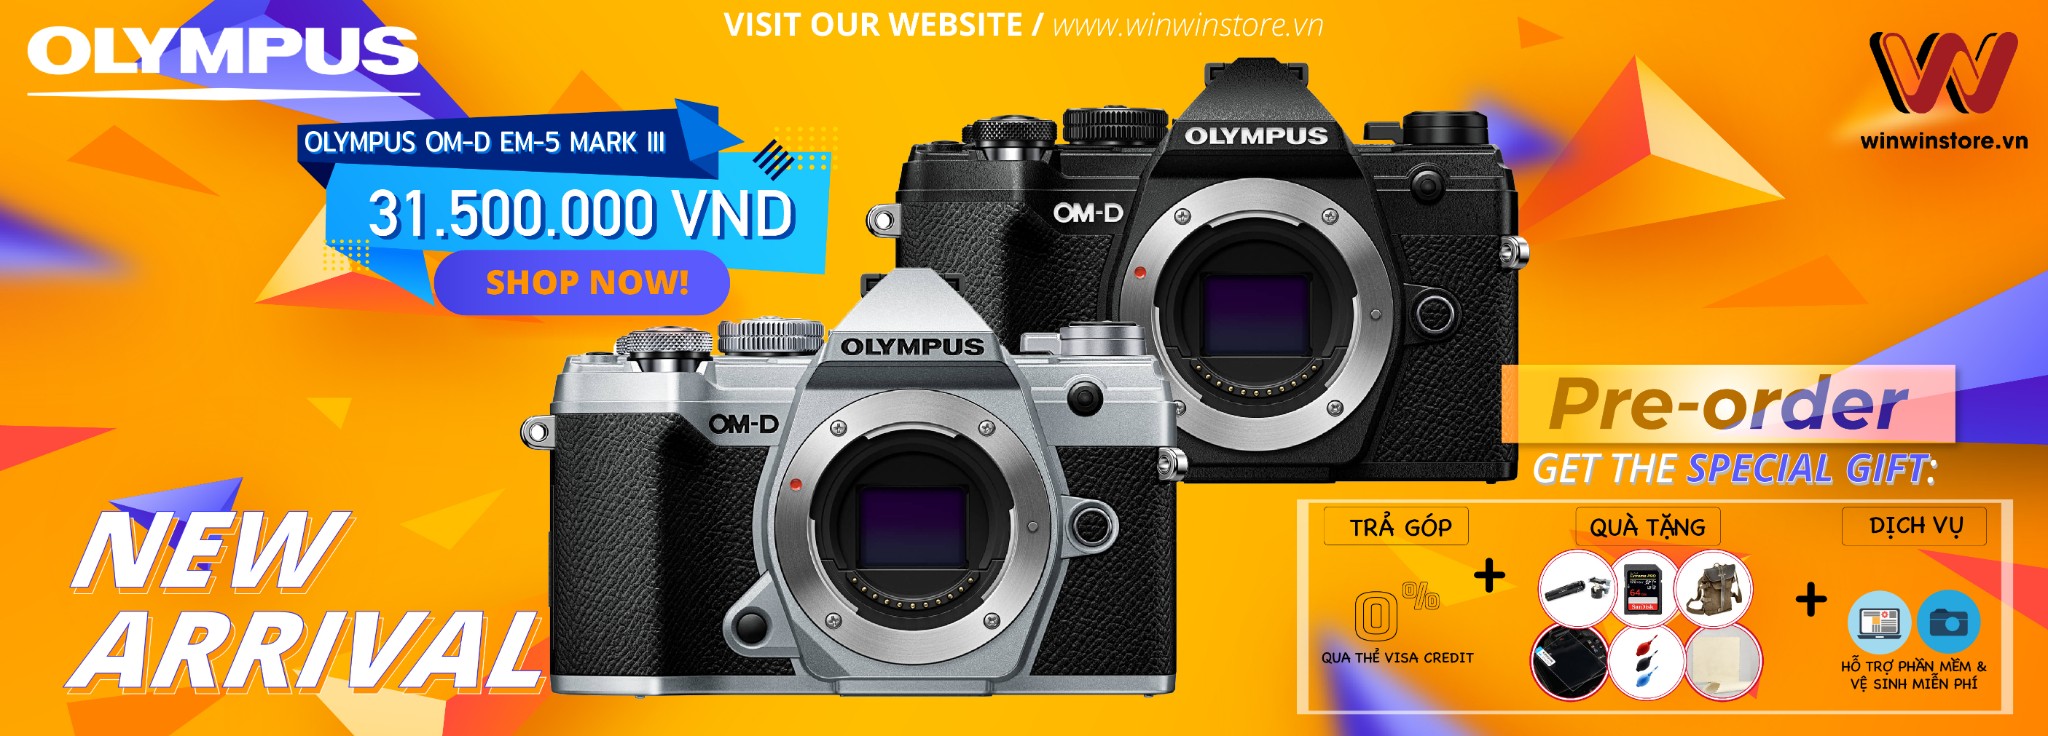 Pre-order Olympus OM-D EM-5 Mark III với các phần quà từ WinWin Store